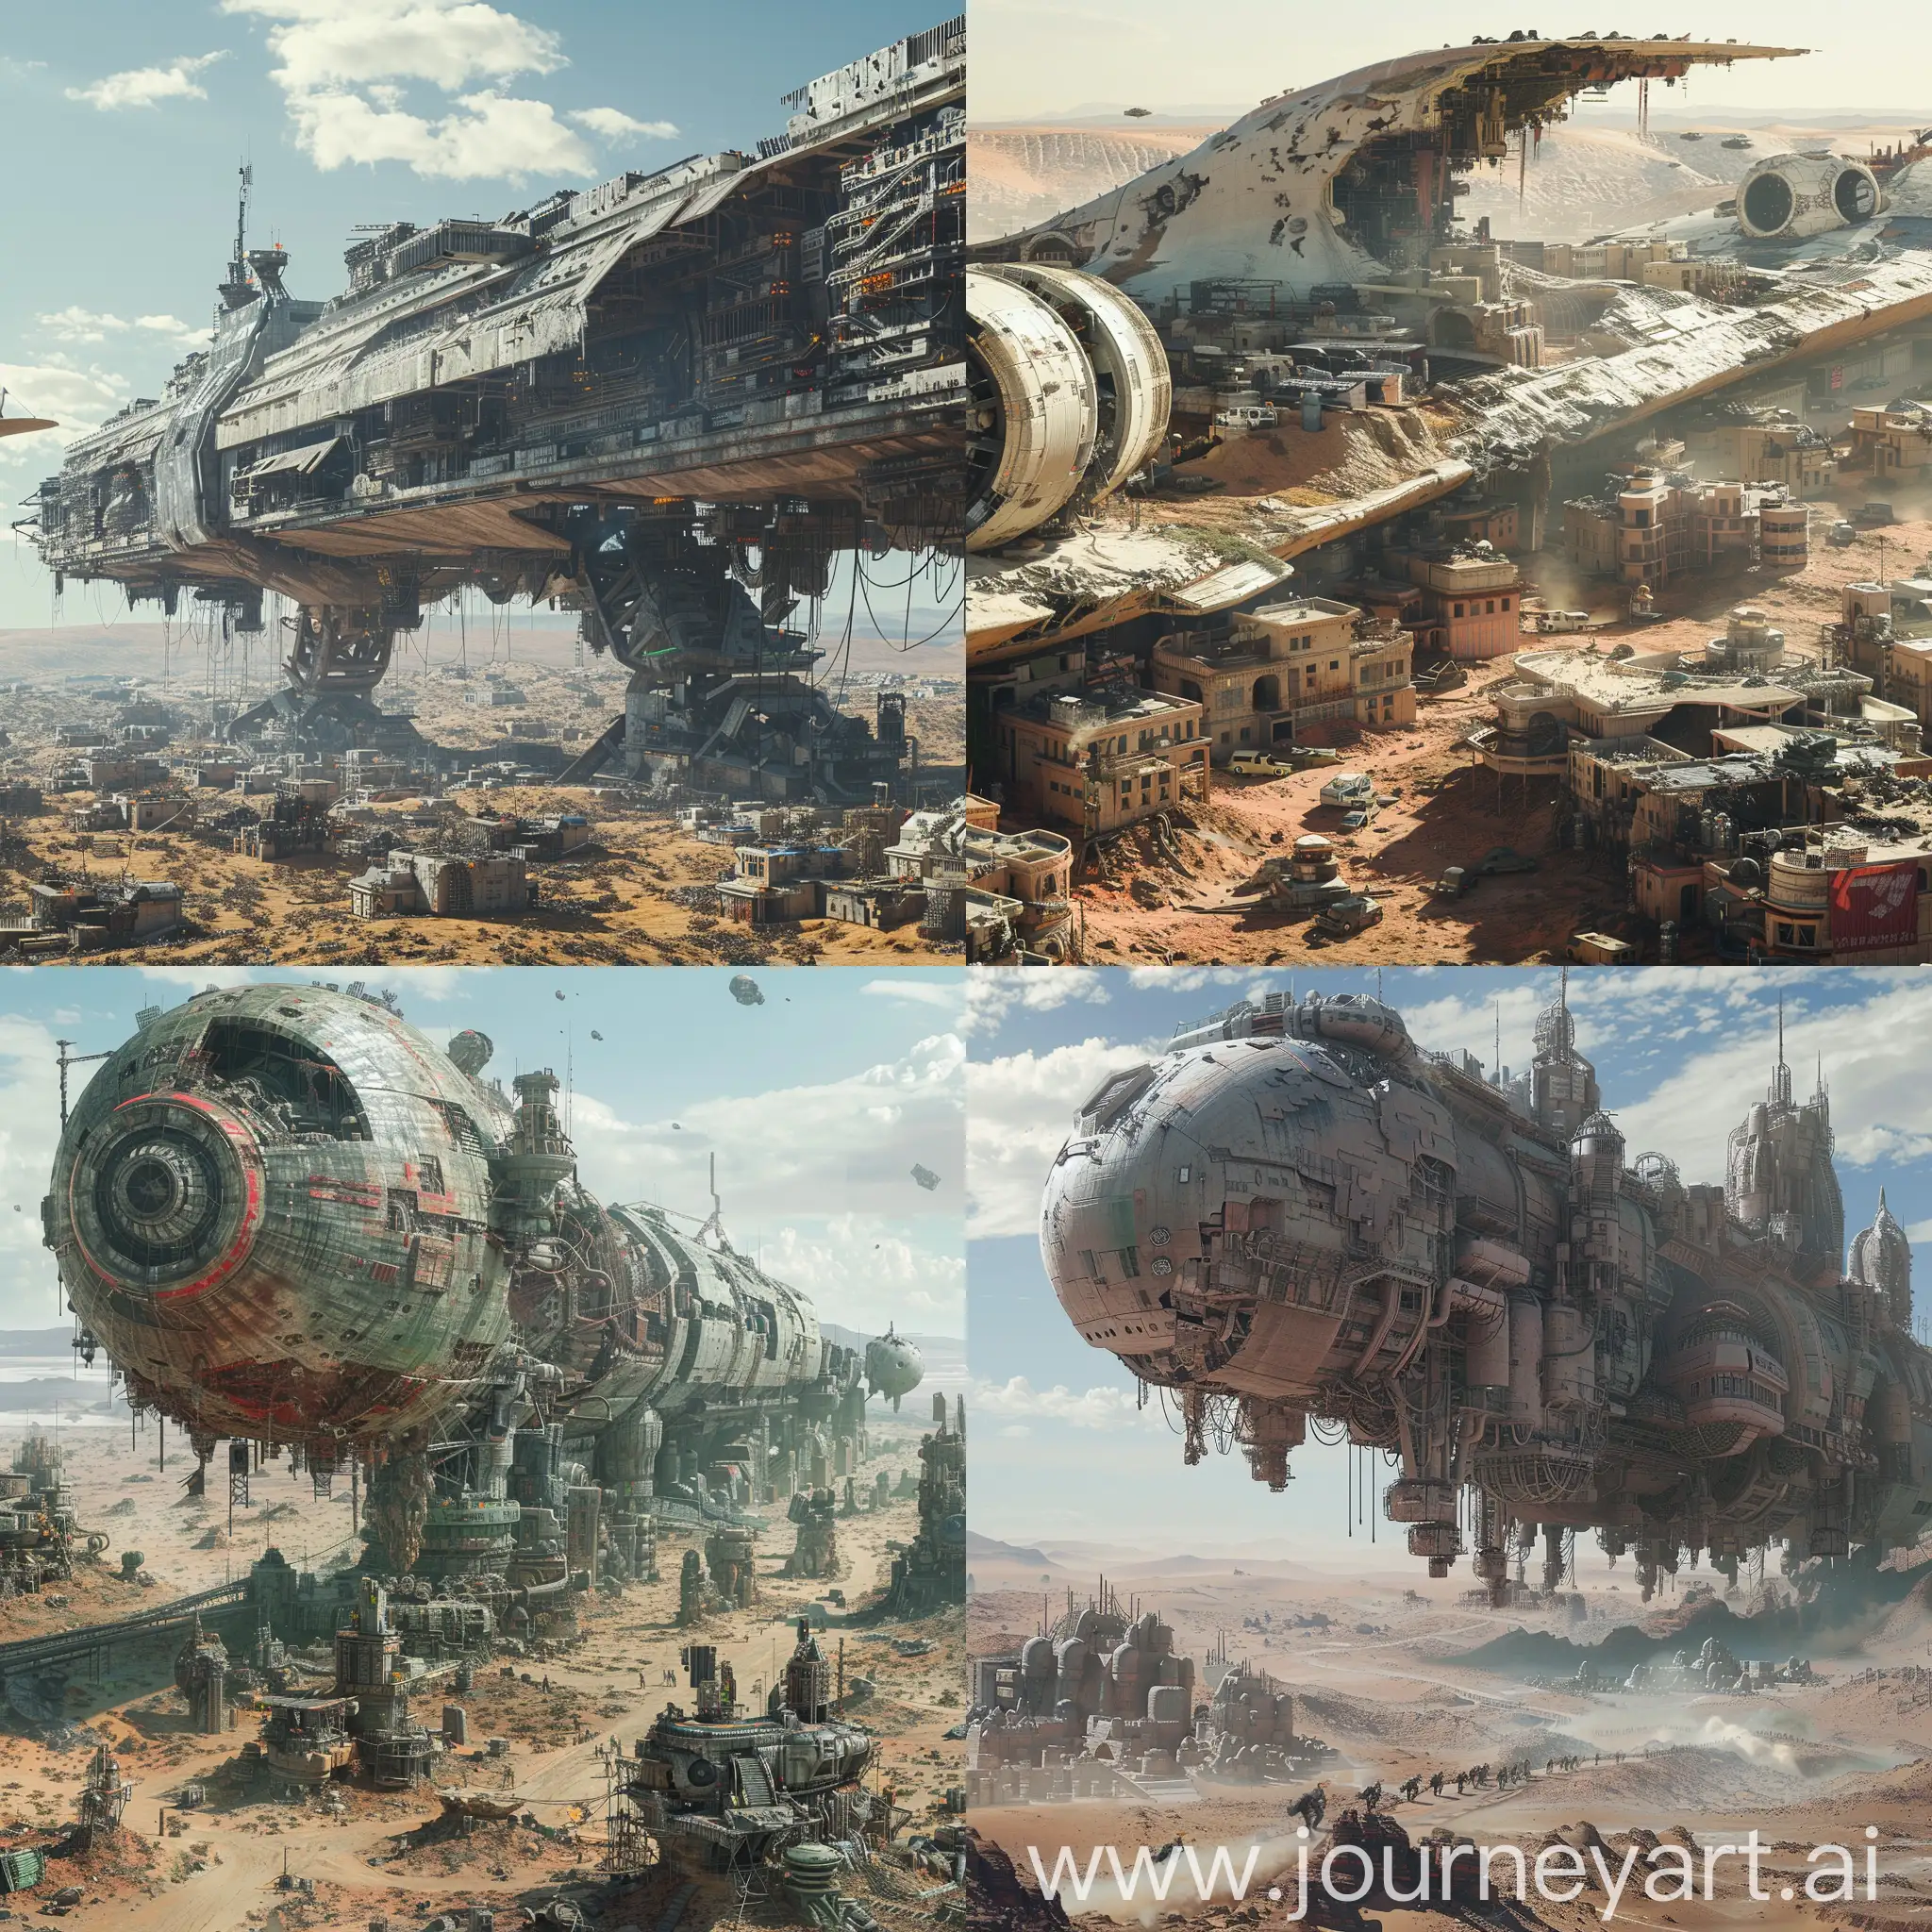 PostApocalyptic-Cityscape-Abandoned-Metropolis-in-Crashed-Spaceship-Wasteland